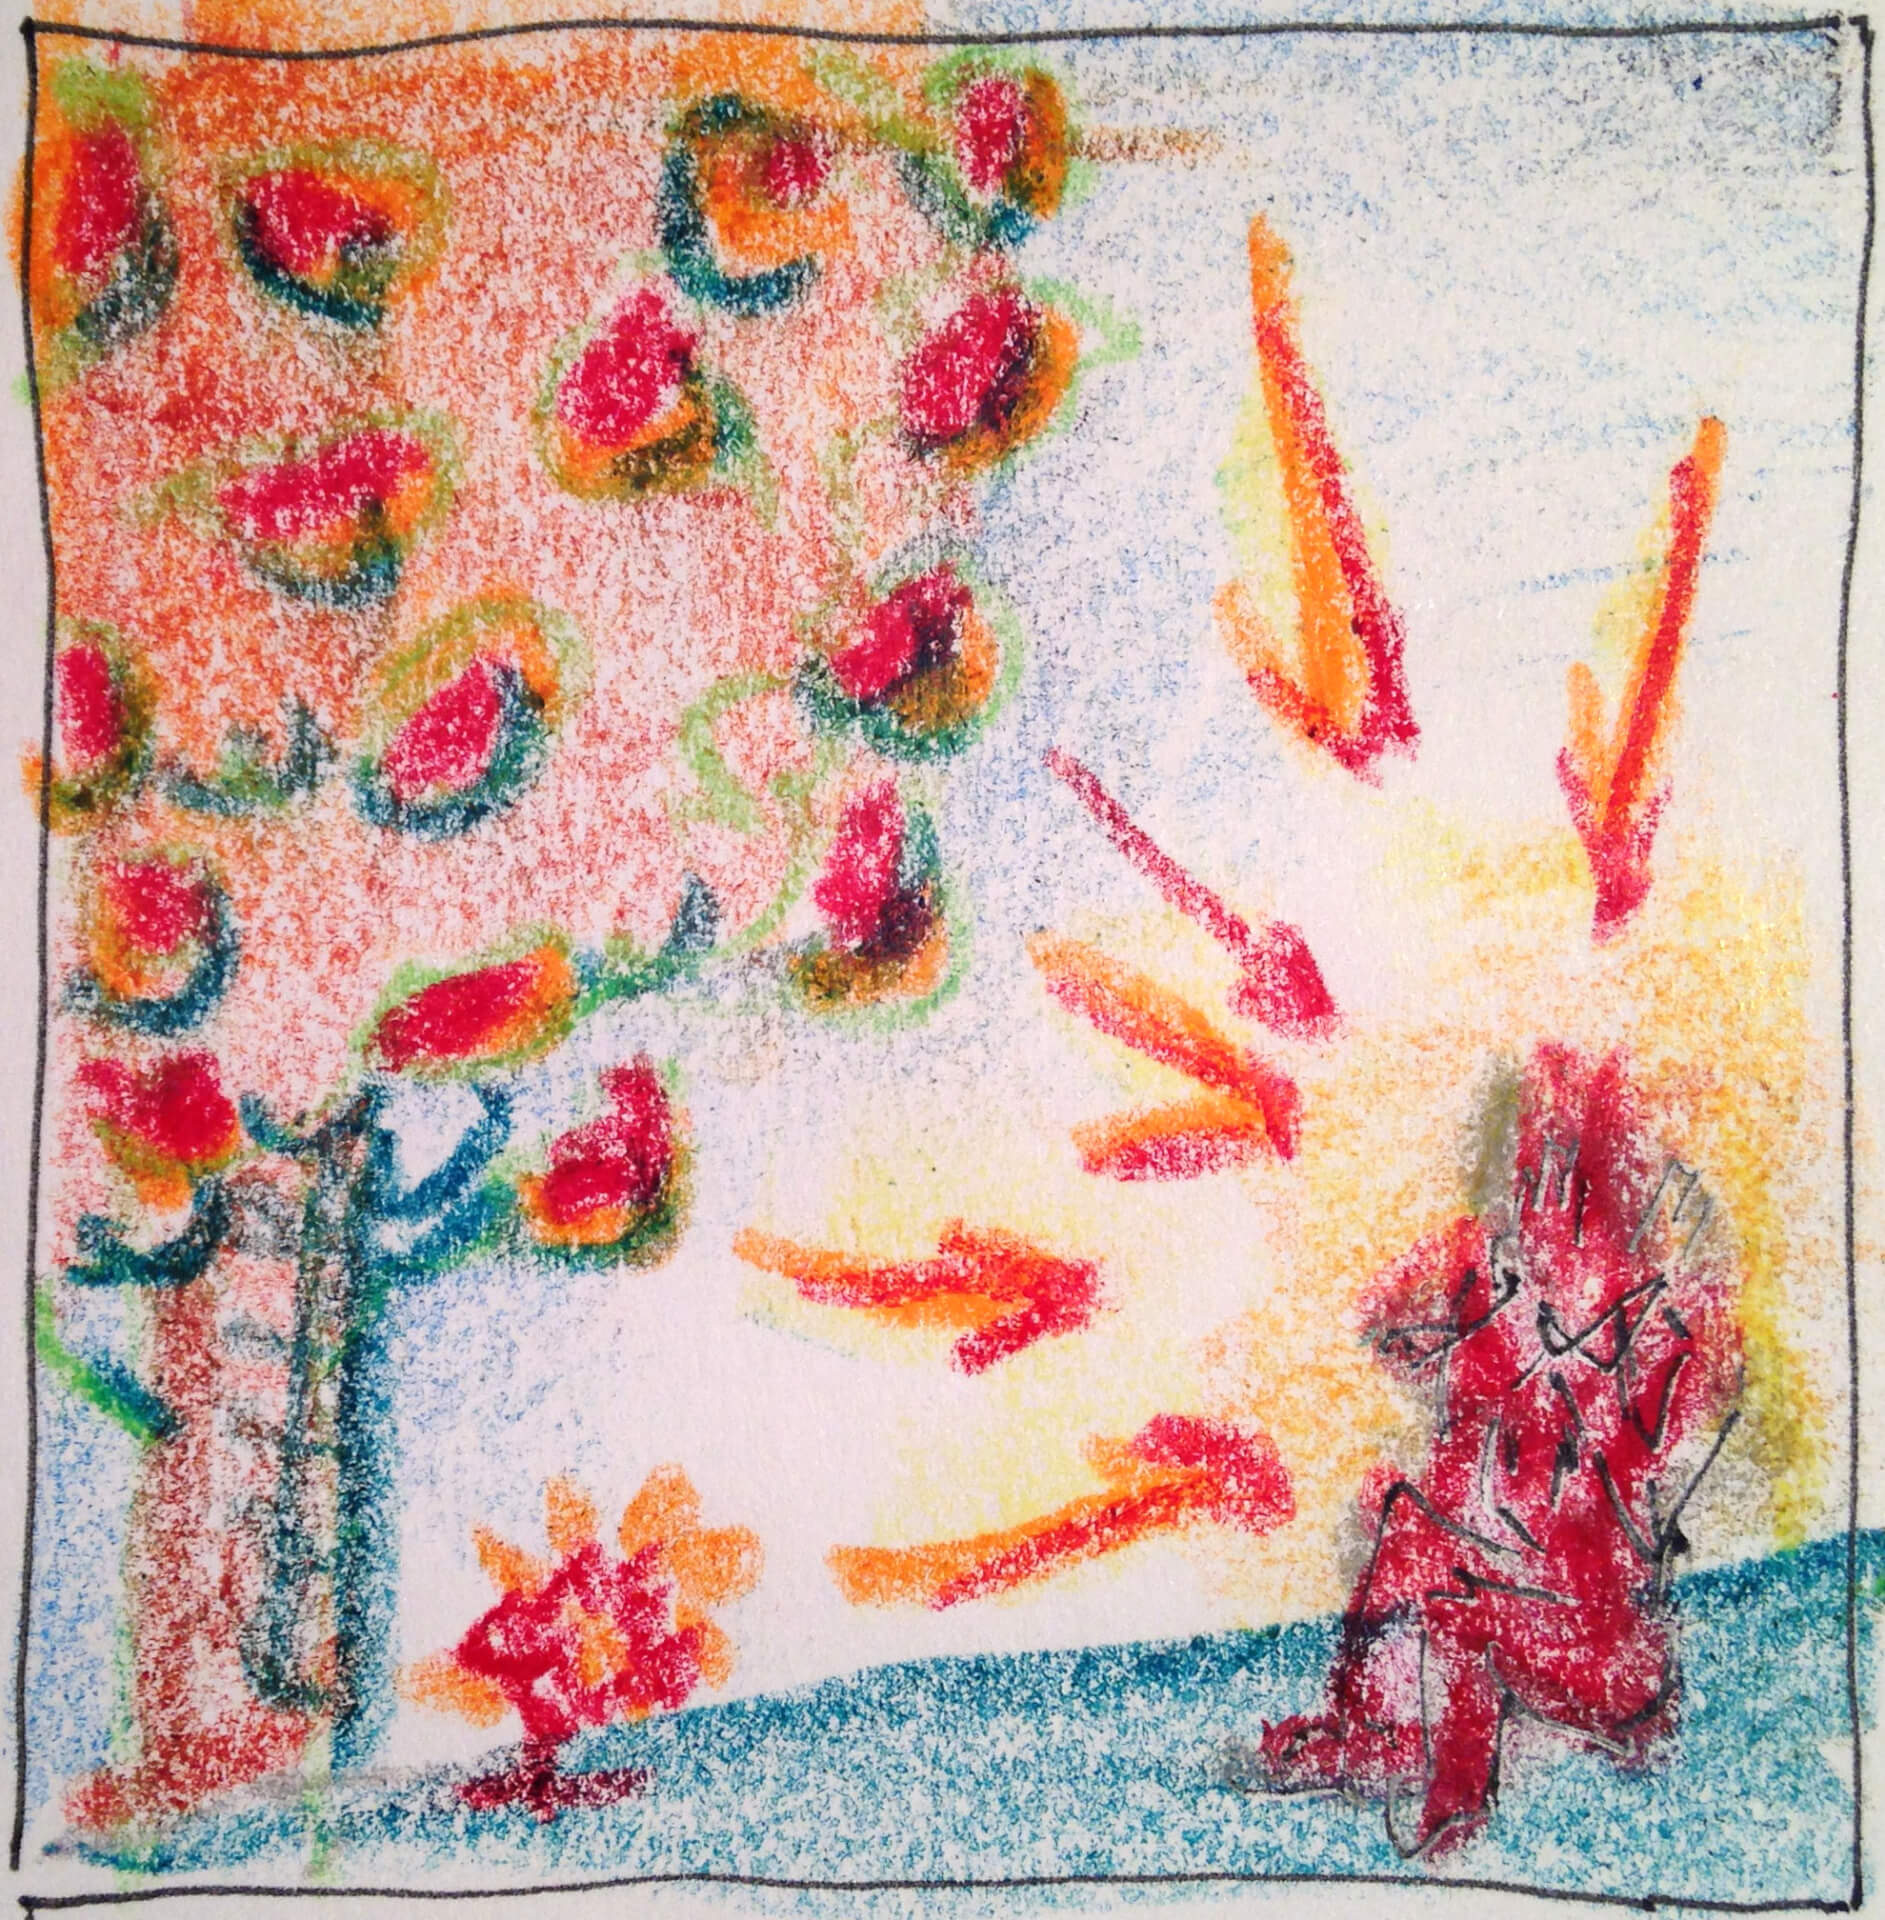 Kinderzeichnung einer roten Gestalt, die in farbenfroher Umgebung unter einem Obstbaum sitzt und ein Gefühl purer Freude ausstrahlt.